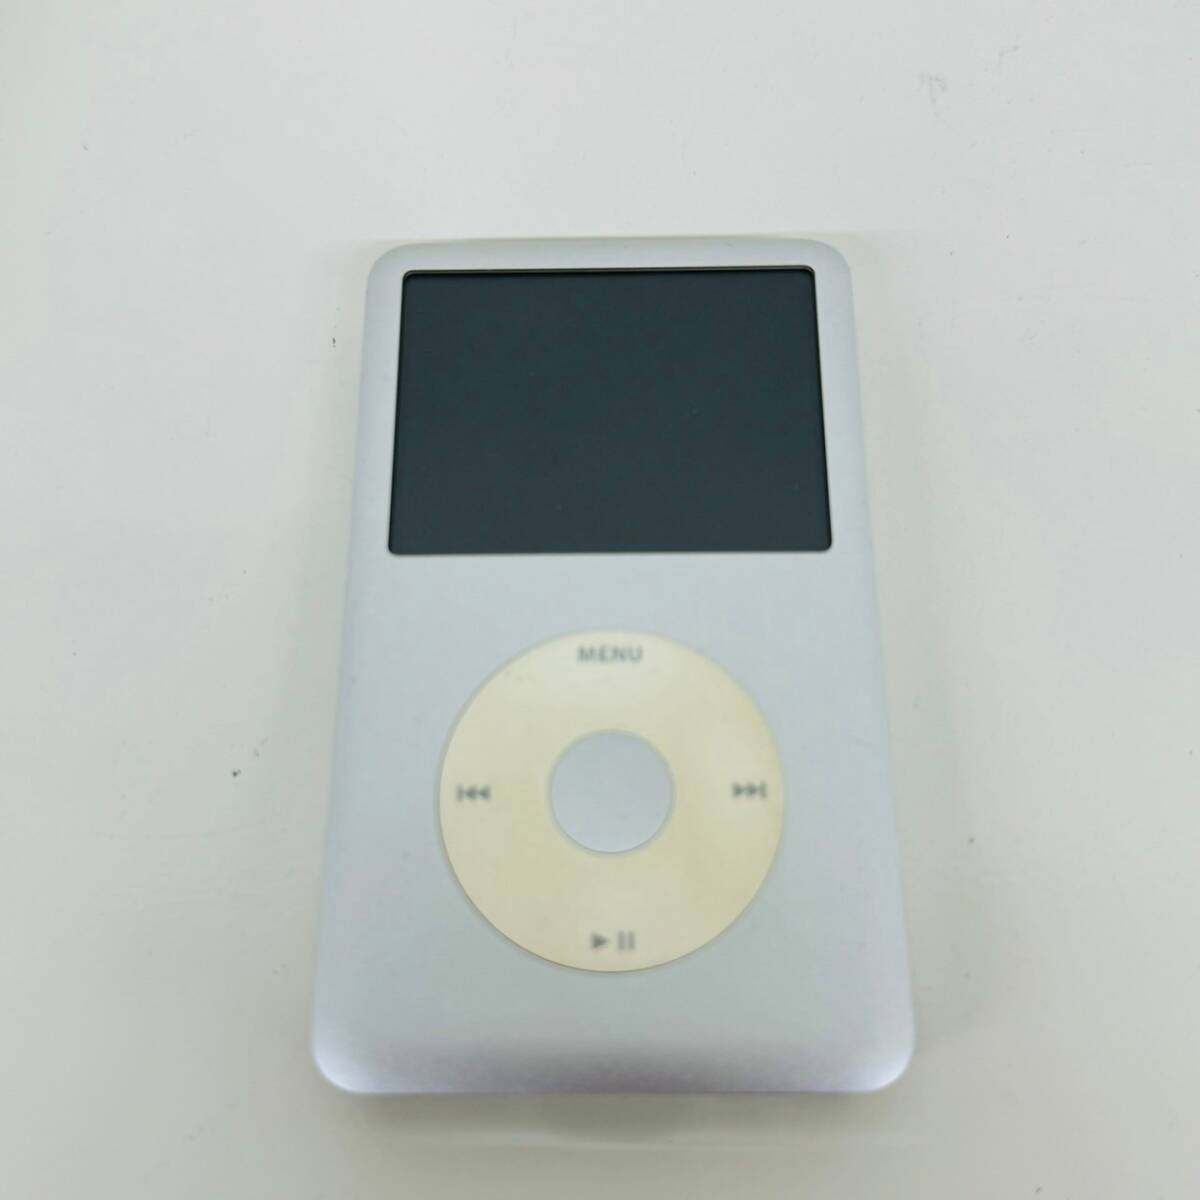 【IK-24275】 A1238 MB562J/A iPod classic 120GB Silver Apple アイポッド 4547597627686 ジャンク イヤフォン 音楽 小型家電 通電未確認_画像2